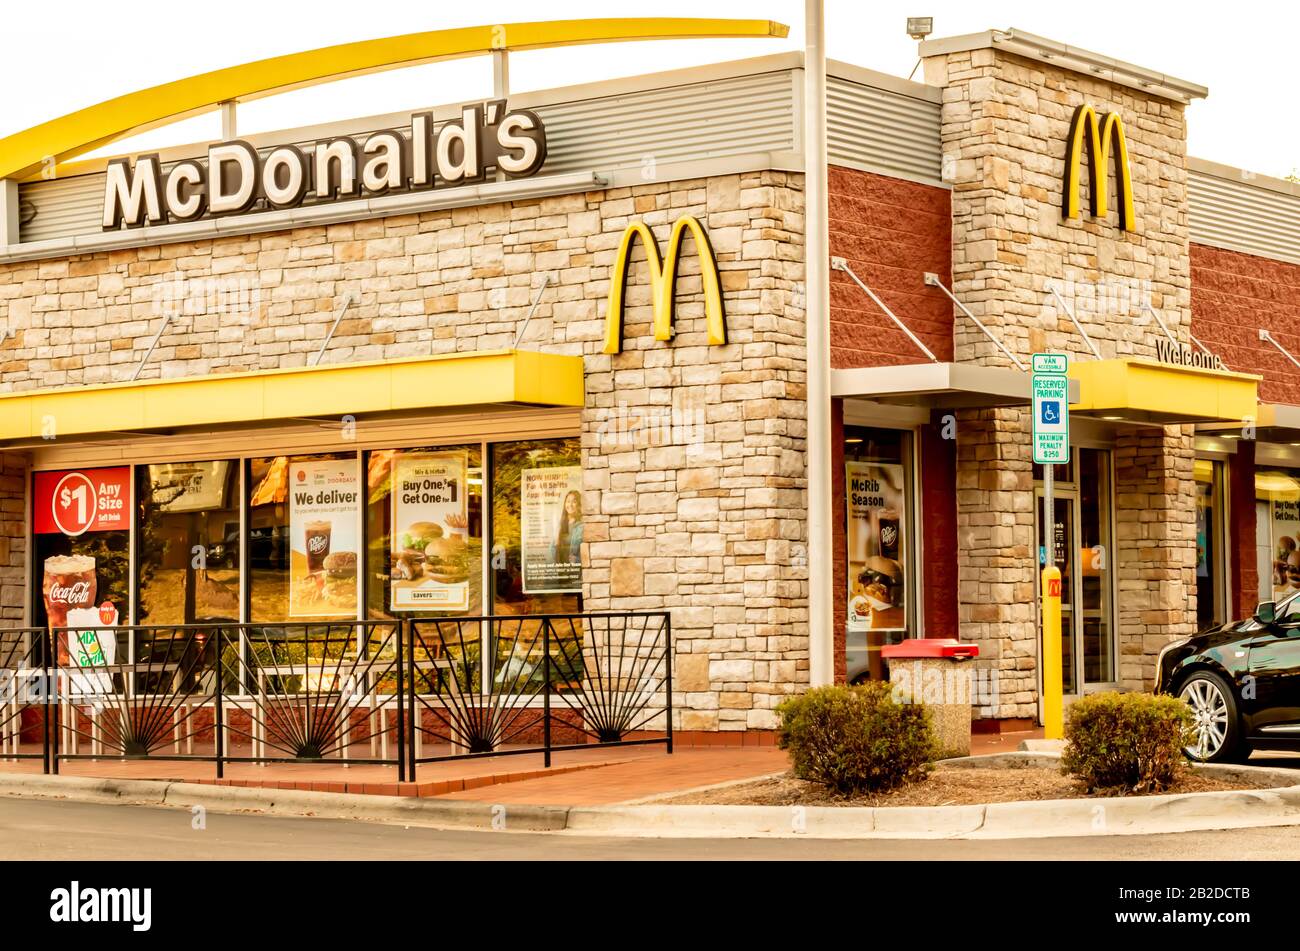 Charlotte, NC/USA - 12. Oktober 2019: Außenfassade aus beigefarbenem Stein von McDonald's, die Marke/Logo in weißen und schwarzen Buchstaben, gelben Bögen und Fenstern zeigt Stockfoto